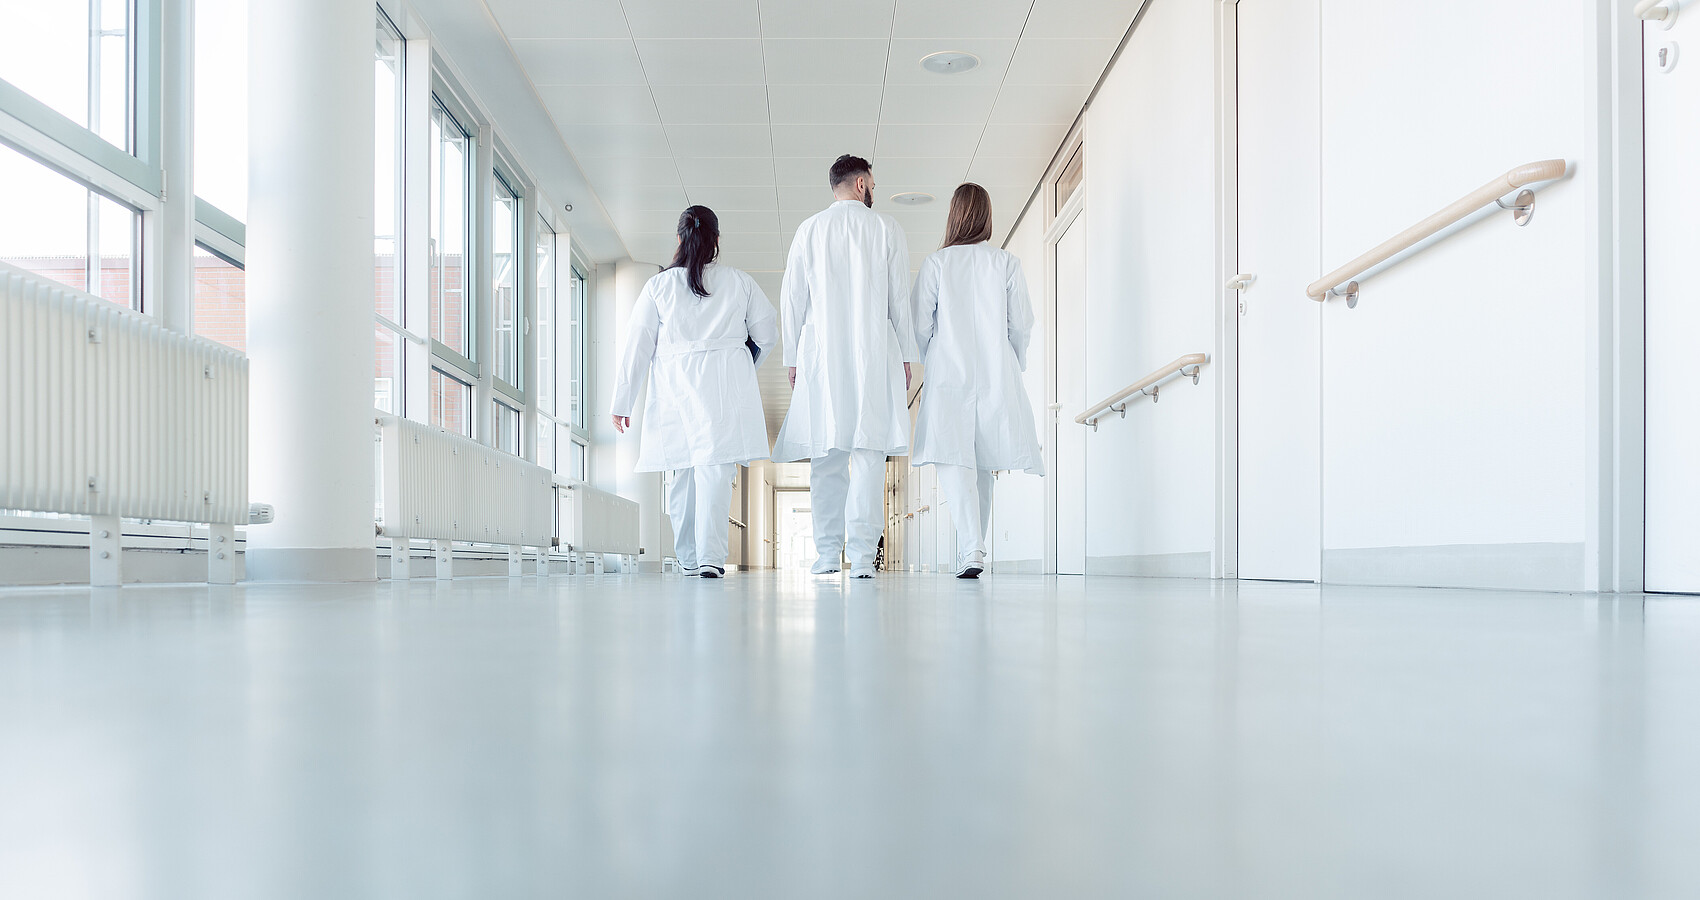 Eine Gruppe Mediziner läuft einen Krankenhausflur entlang